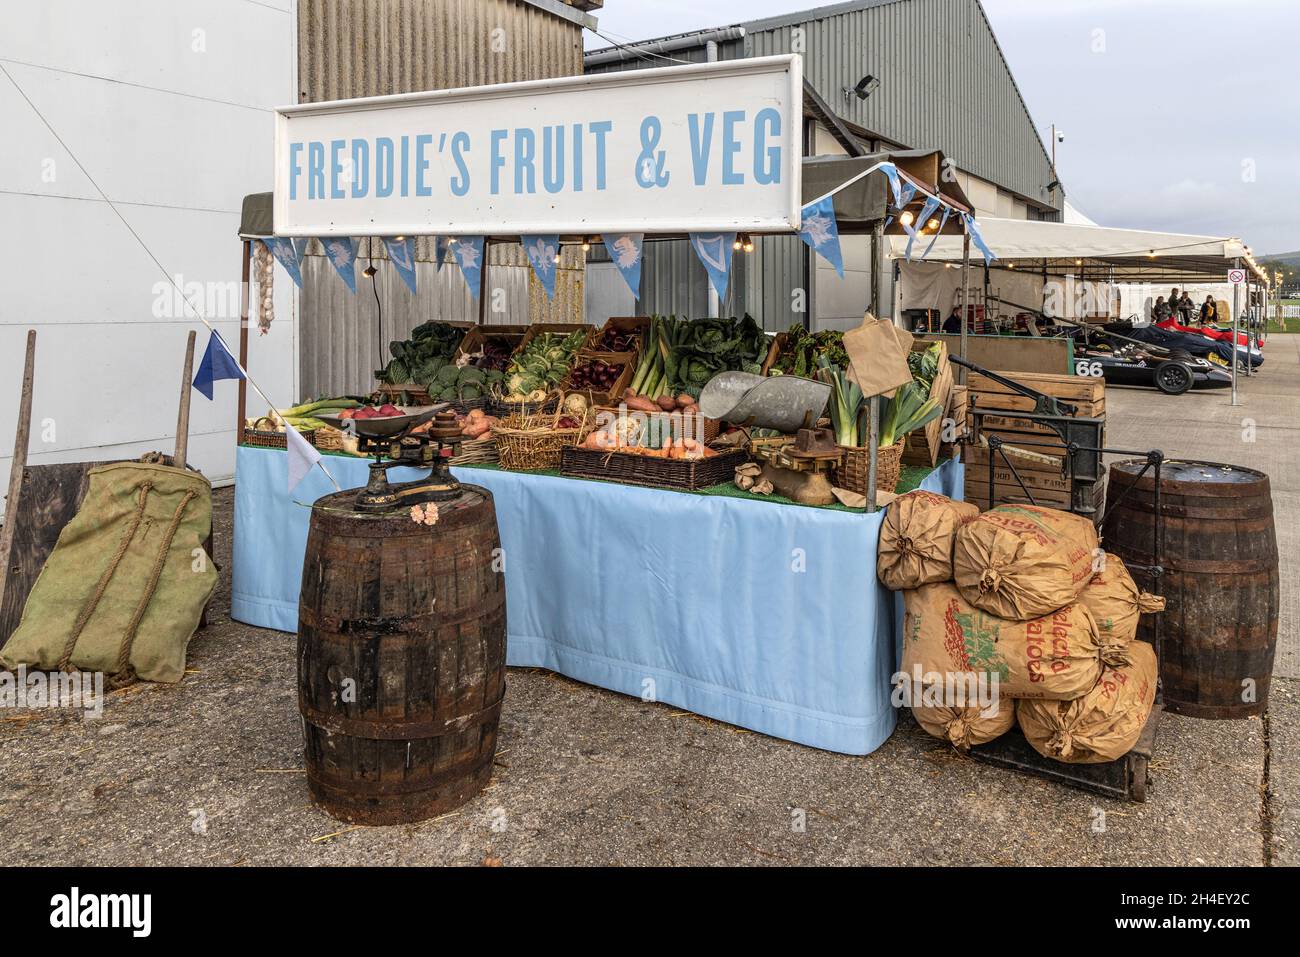 La bancarella di frutta e bevande di Freddie. Uno stand di mercato di mock-up con frutta e verdura reali al 78 ° Goodwood Members Meeting, Sussex, Regno Unito. Foto Stock